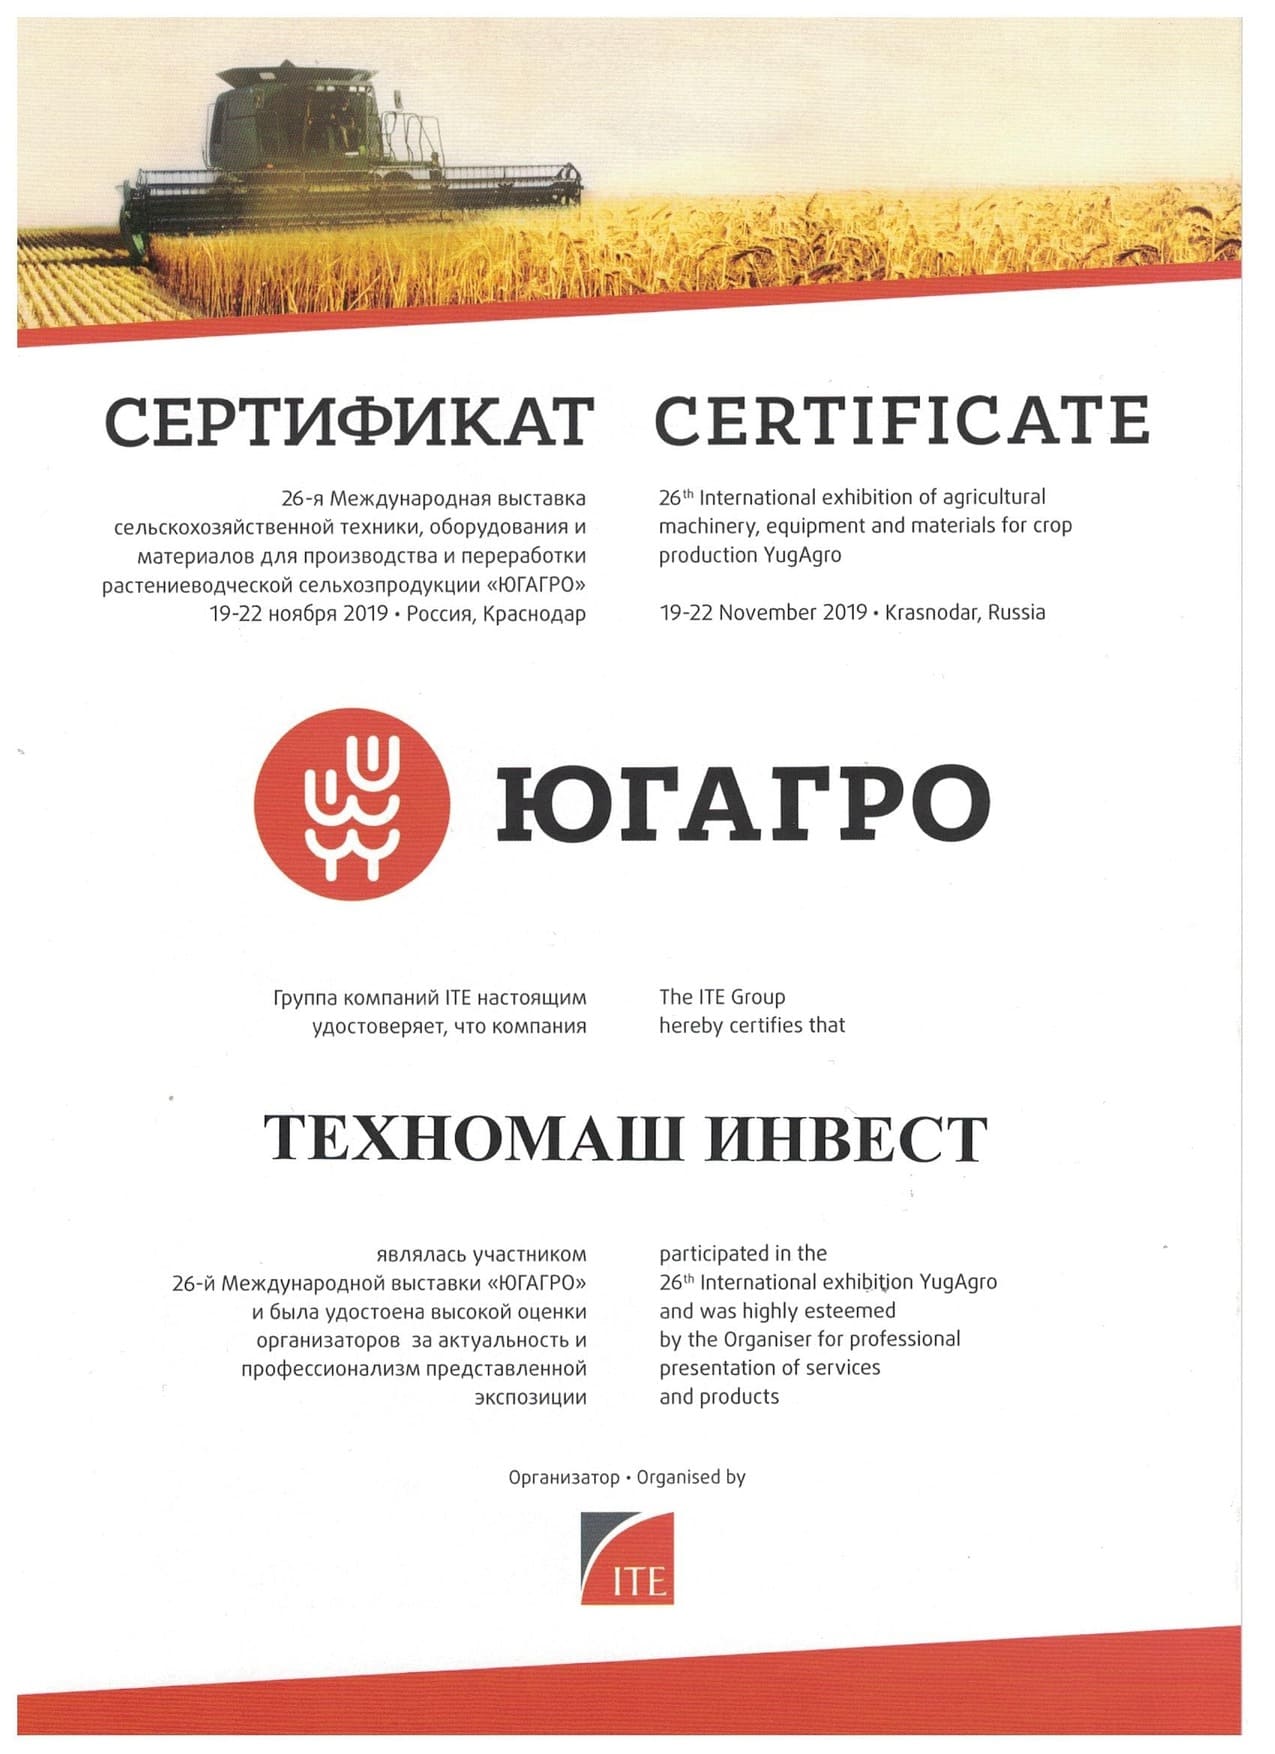 Сертификат об участии (1)